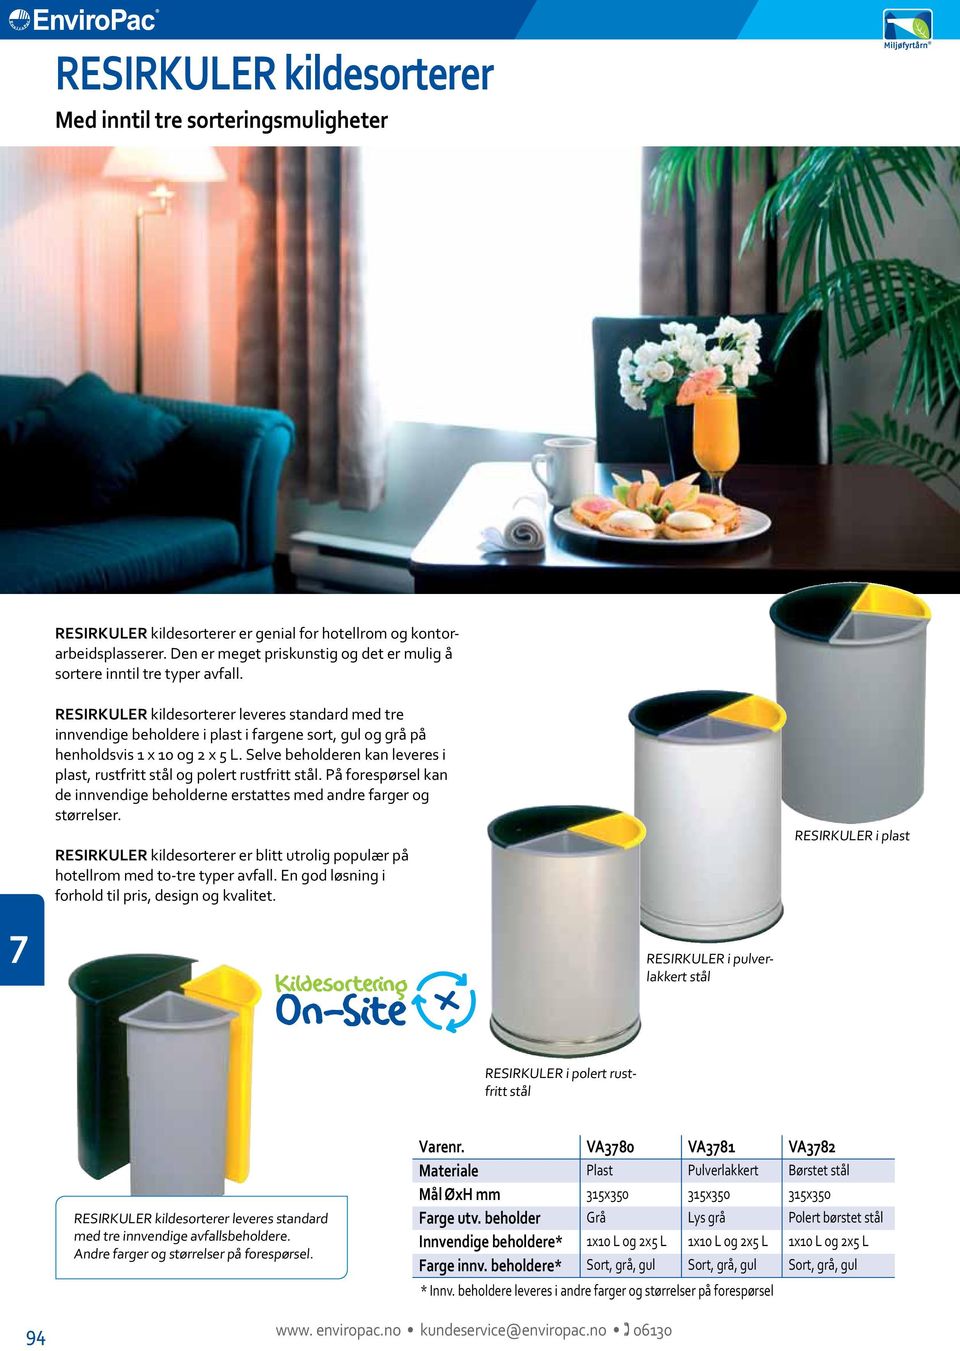 RESIRKULER kildesorterer leveres standard med tre innvendige beholdere i plast i fargene sort, gul og grå på henholdsvis x 0 og x L.